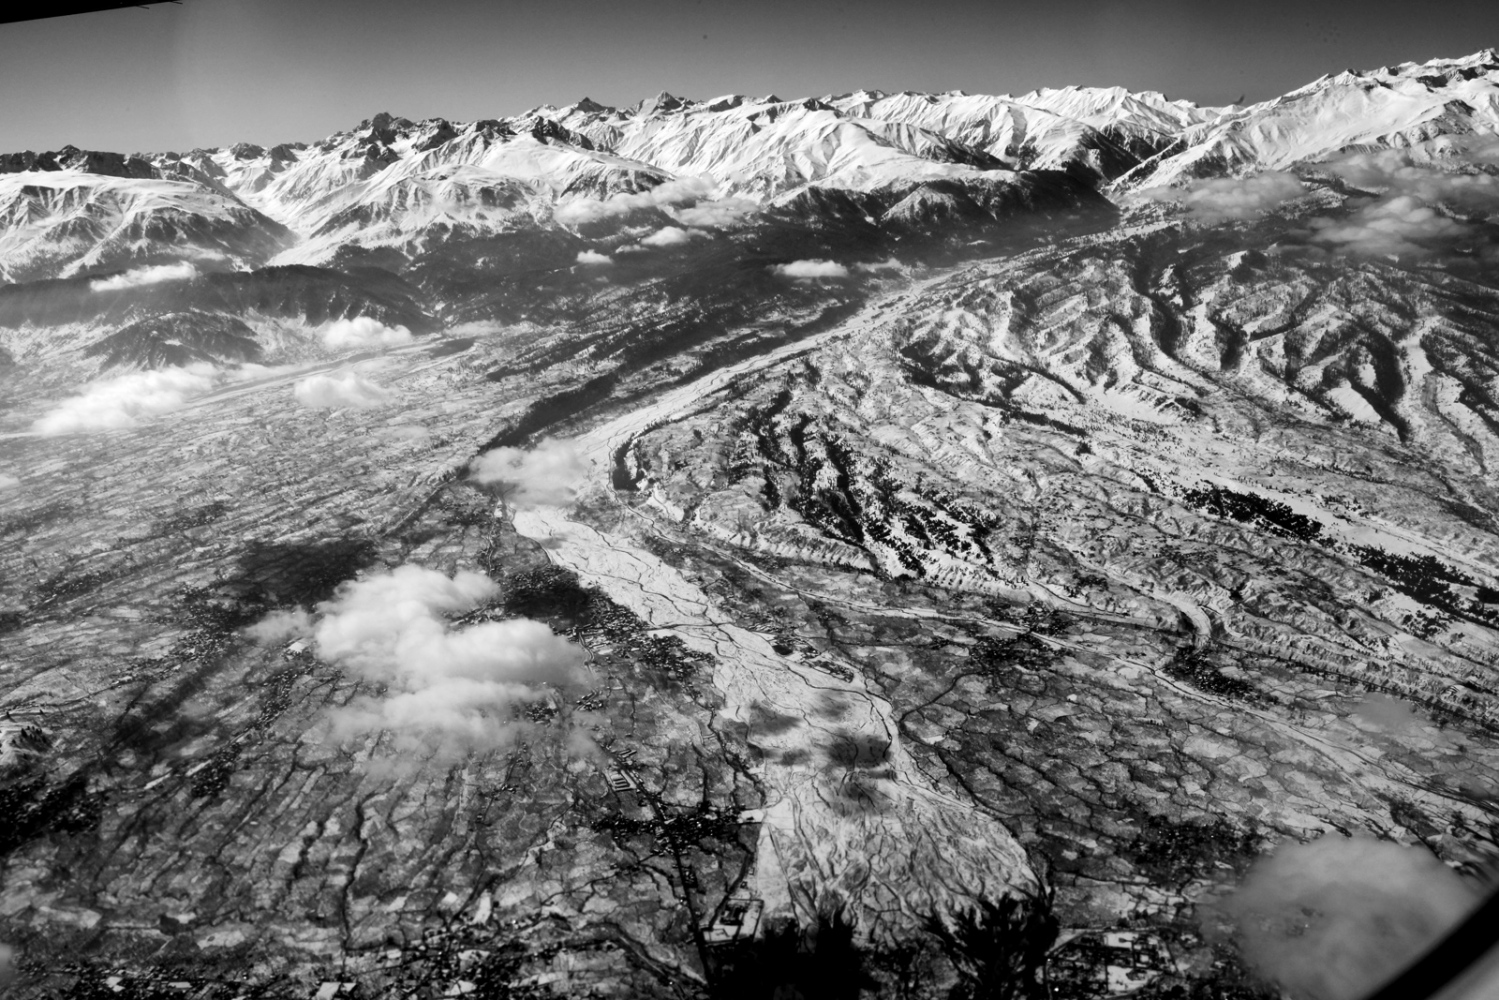 an aerial view of Kashmir, Himalayan mountains